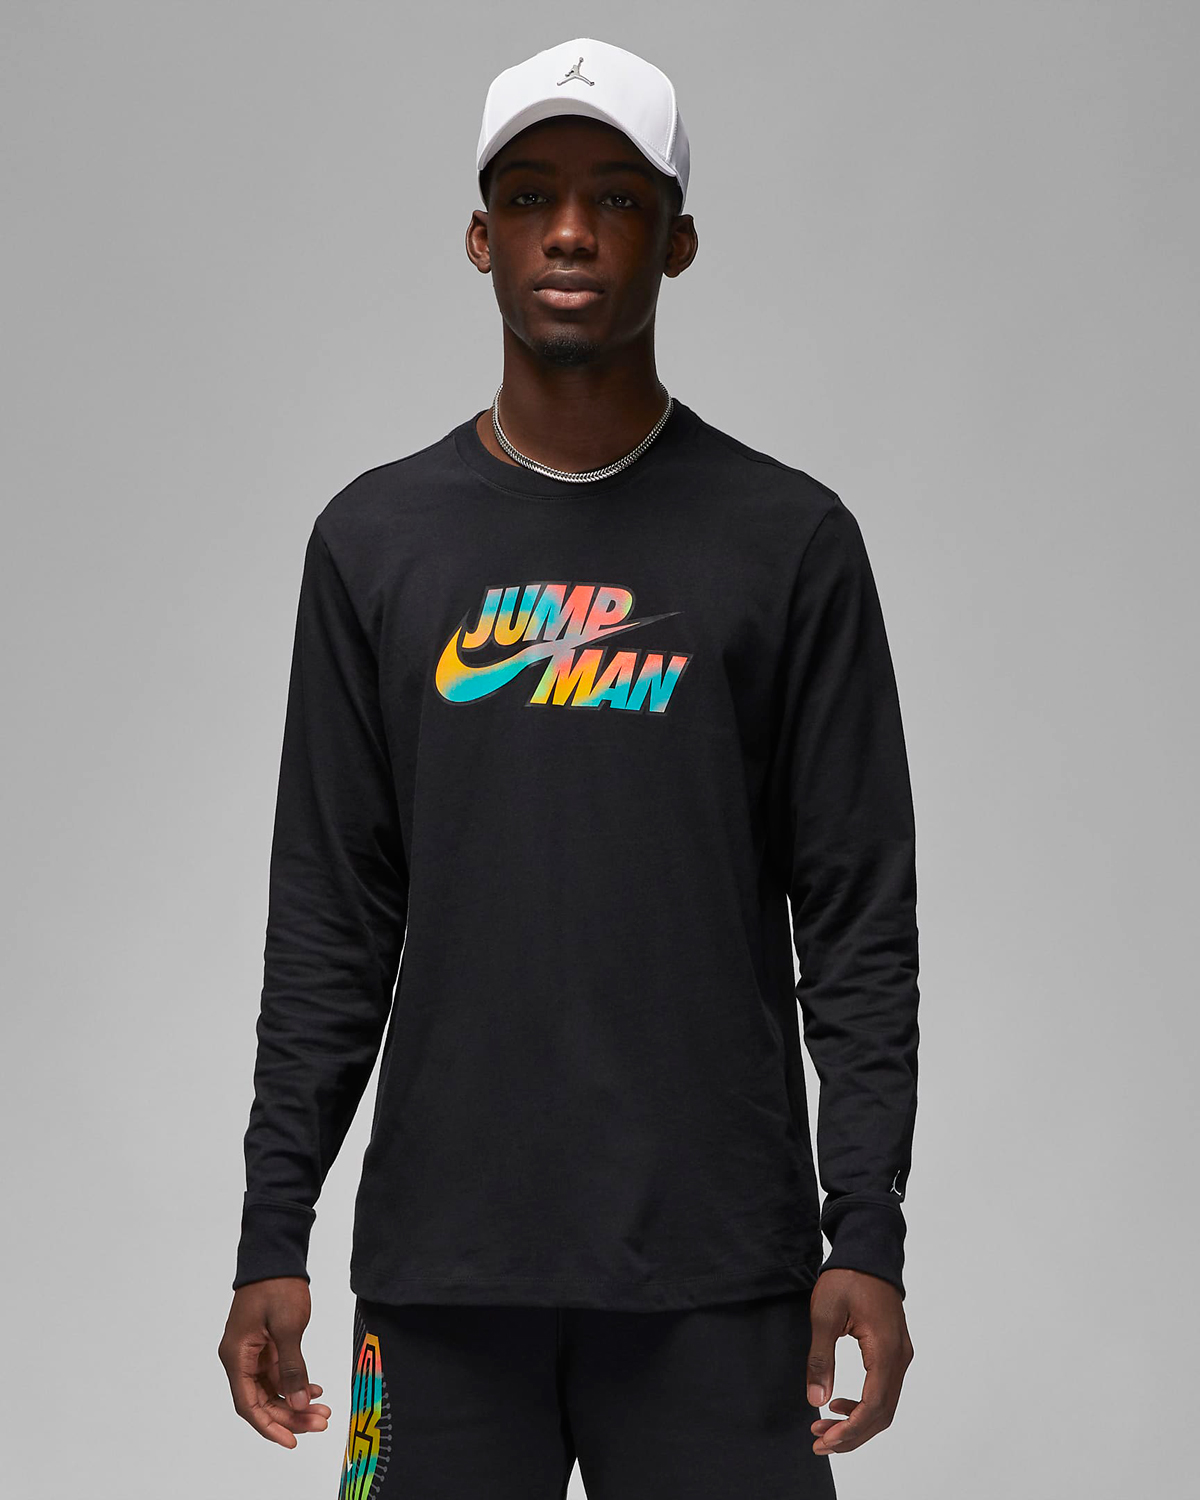 jordan-flight-mvp-jumpman-long-sleeve-t-shirt-black-multi-color-1